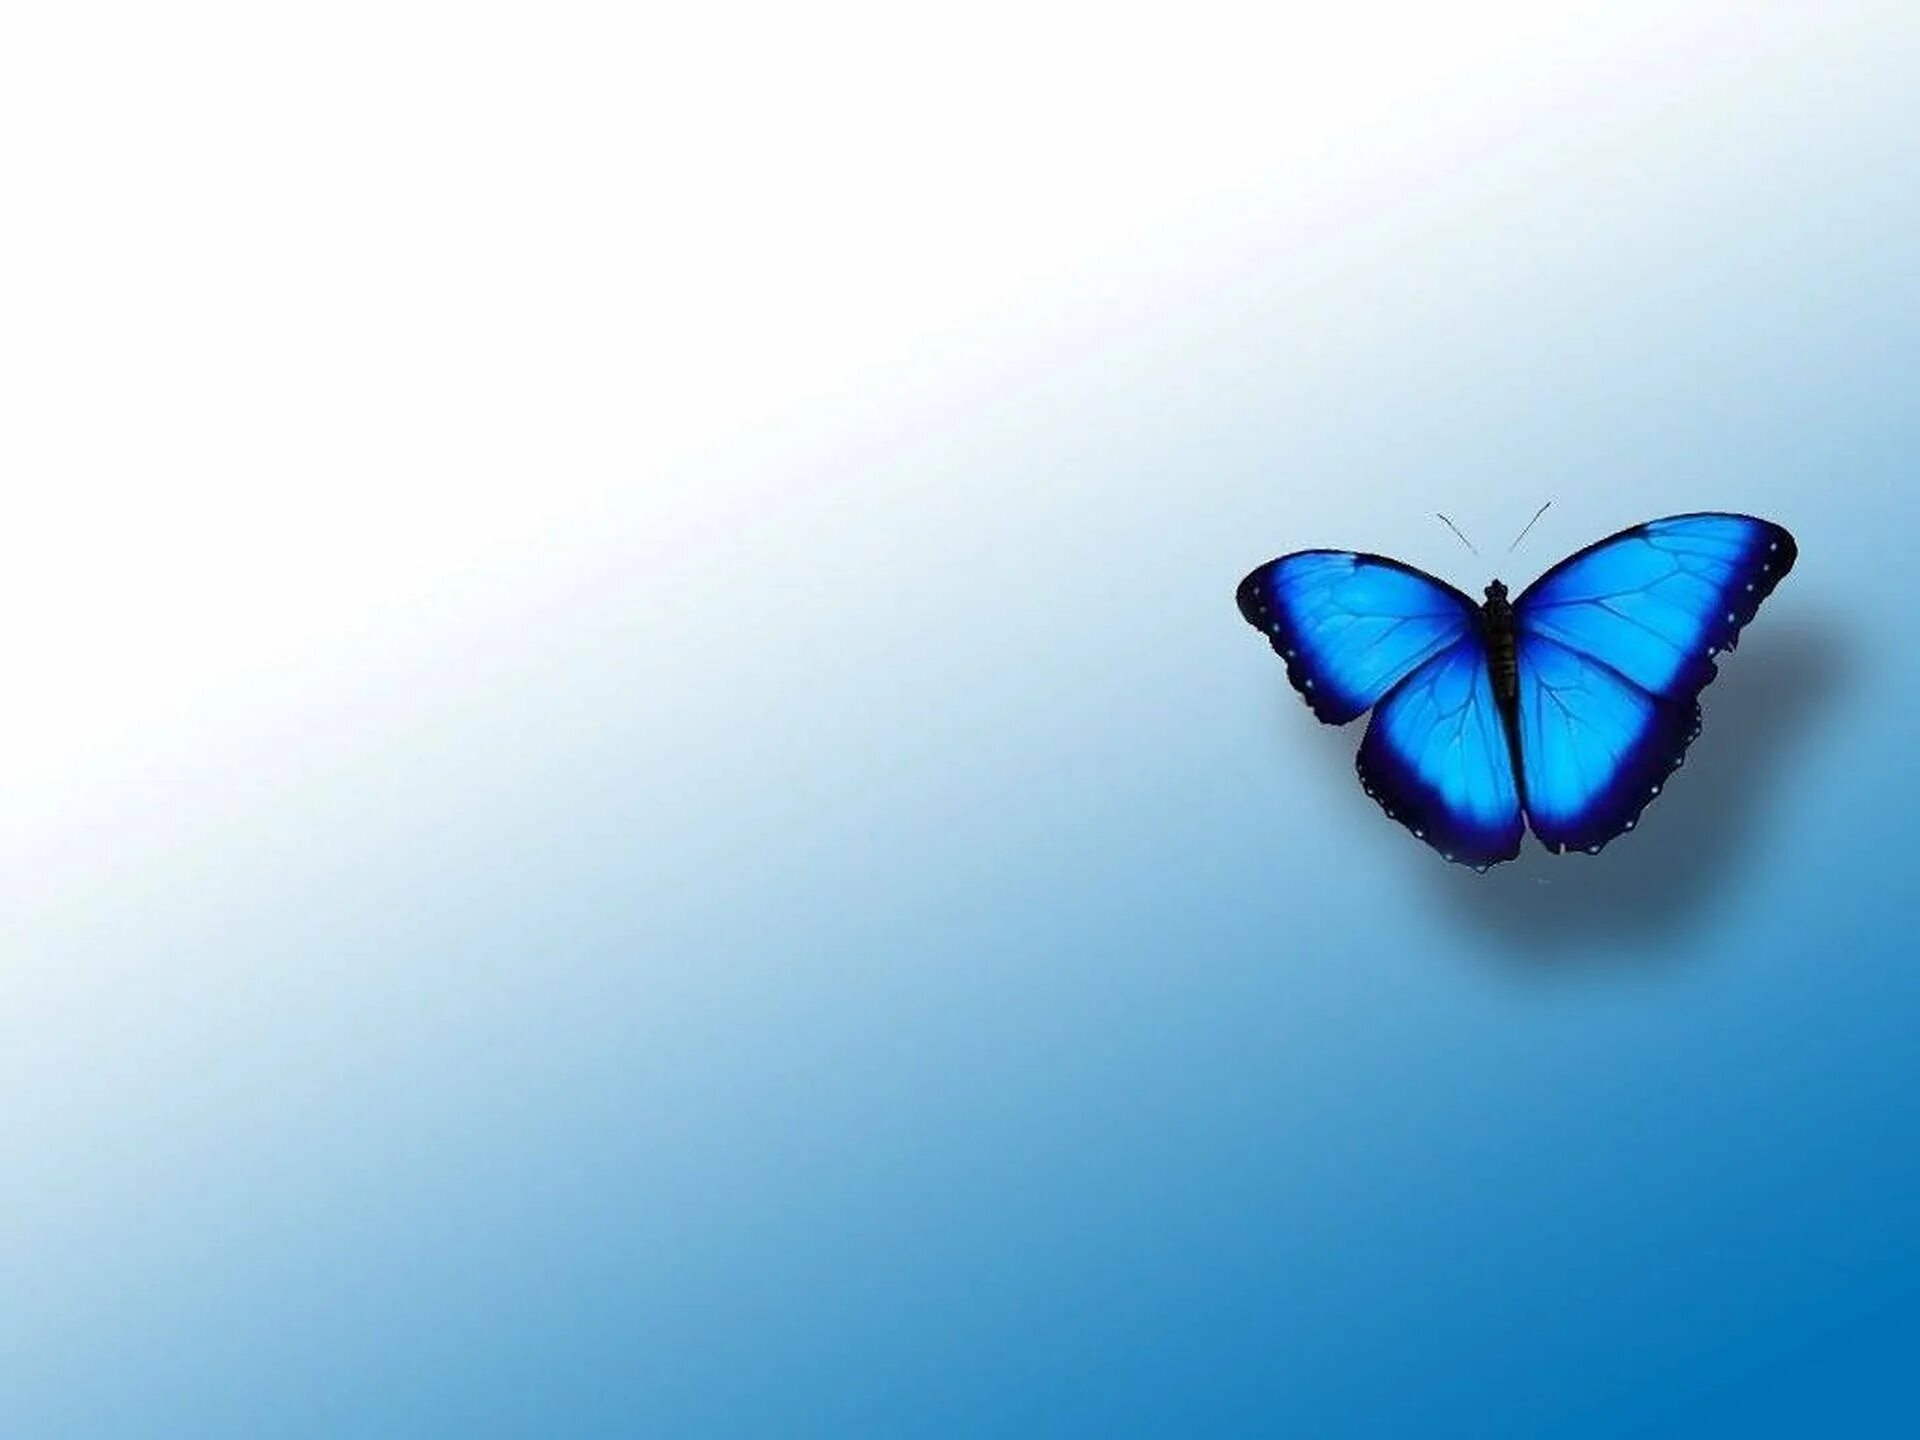 Обои фон бабочка. Фон бабочки. Обои с бабочками. Бабочка на синем фоне. Синяя бабочка.